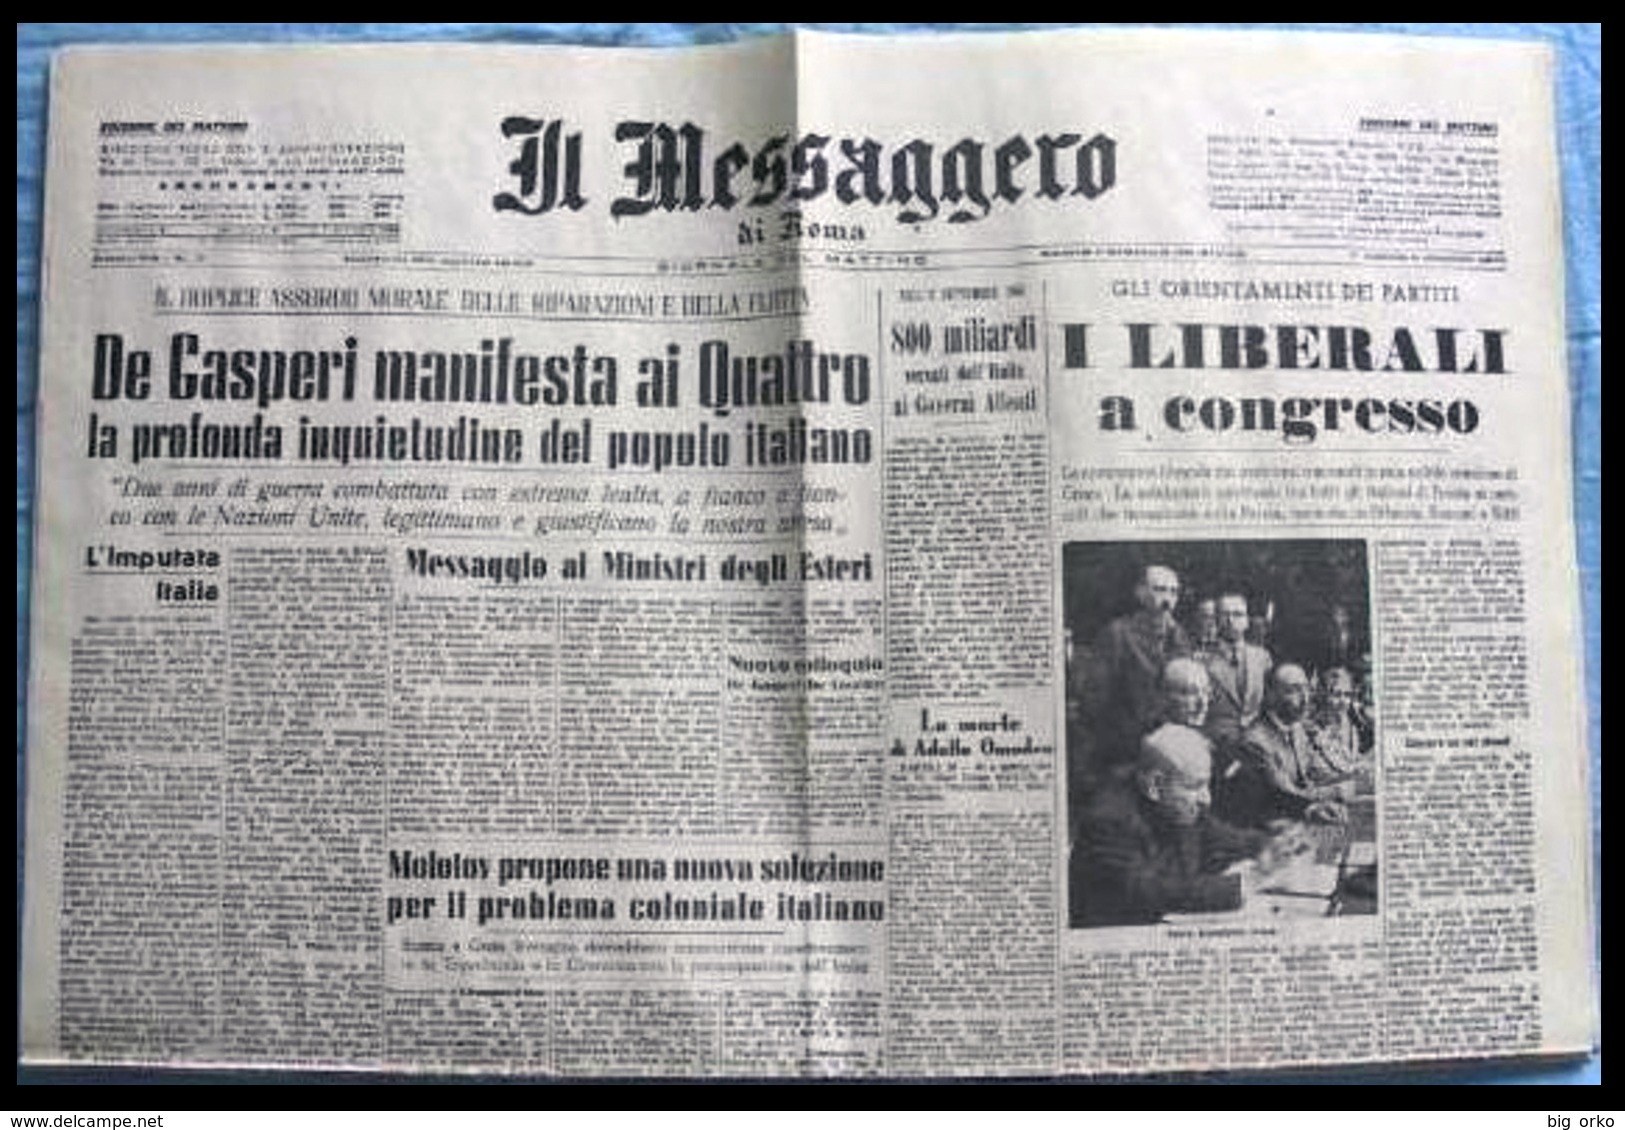 IL MESSAGGERO (Roma) – 30 Aprile 1946 (Trafugamento Della Salma Di Mussolini - Cronaca Di Roma) - Italien